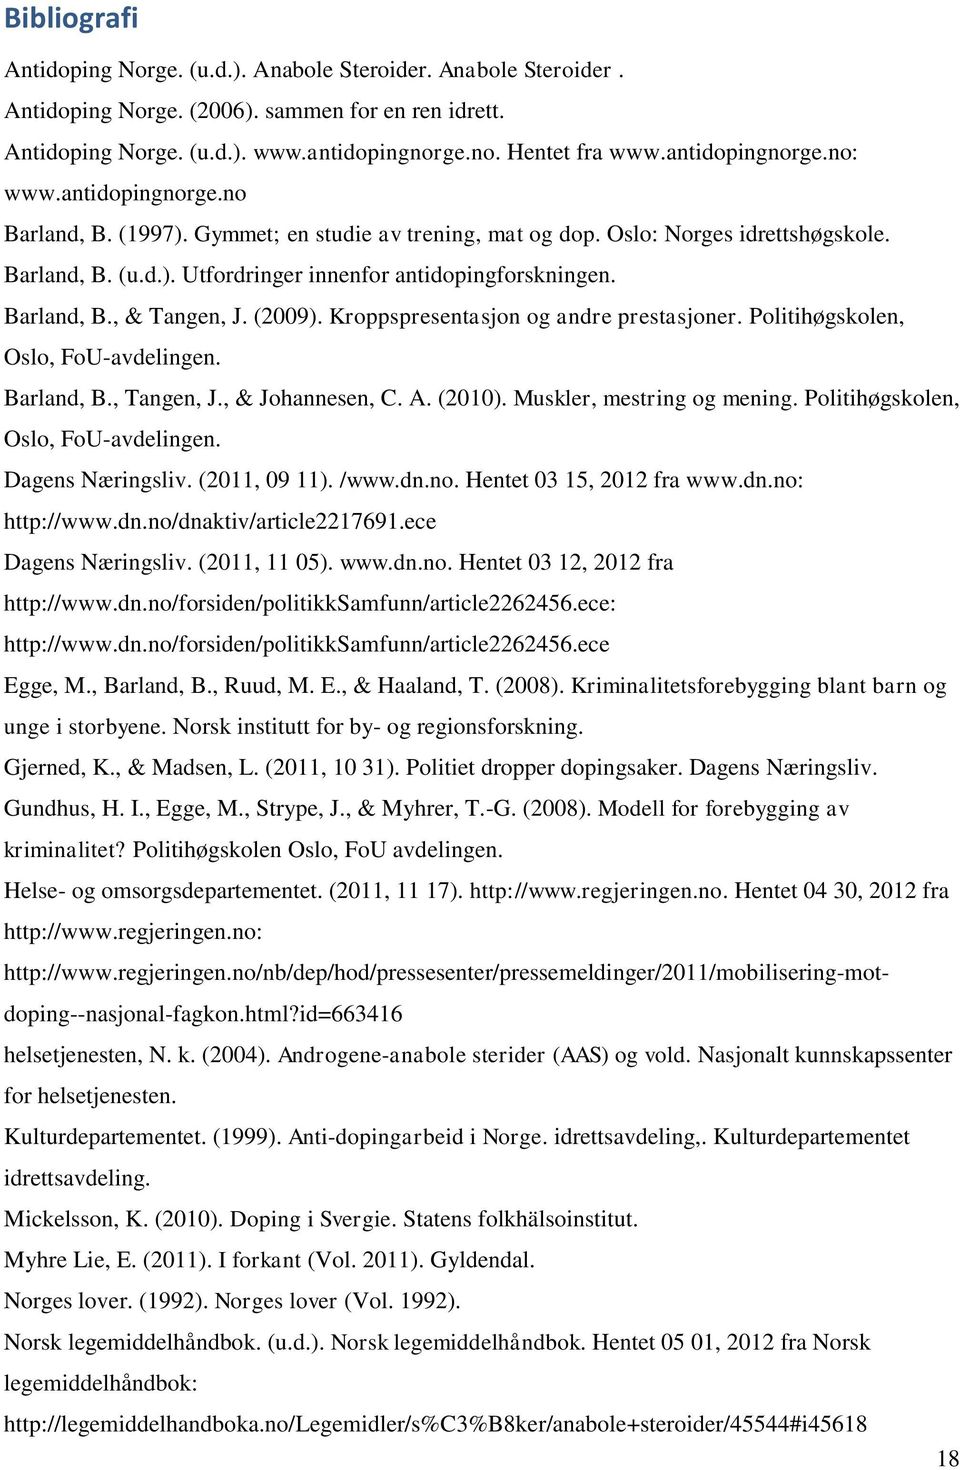 Barland, B., & Tangen, J. (2009). Kroppspresentasjon og andre prestasjoner. Politihøgskolen, Oslo, FoU-avdelingen. Barland, B., Tangen, J., & Johannesen, C. A. (2010). Muskler, mestring og mening.